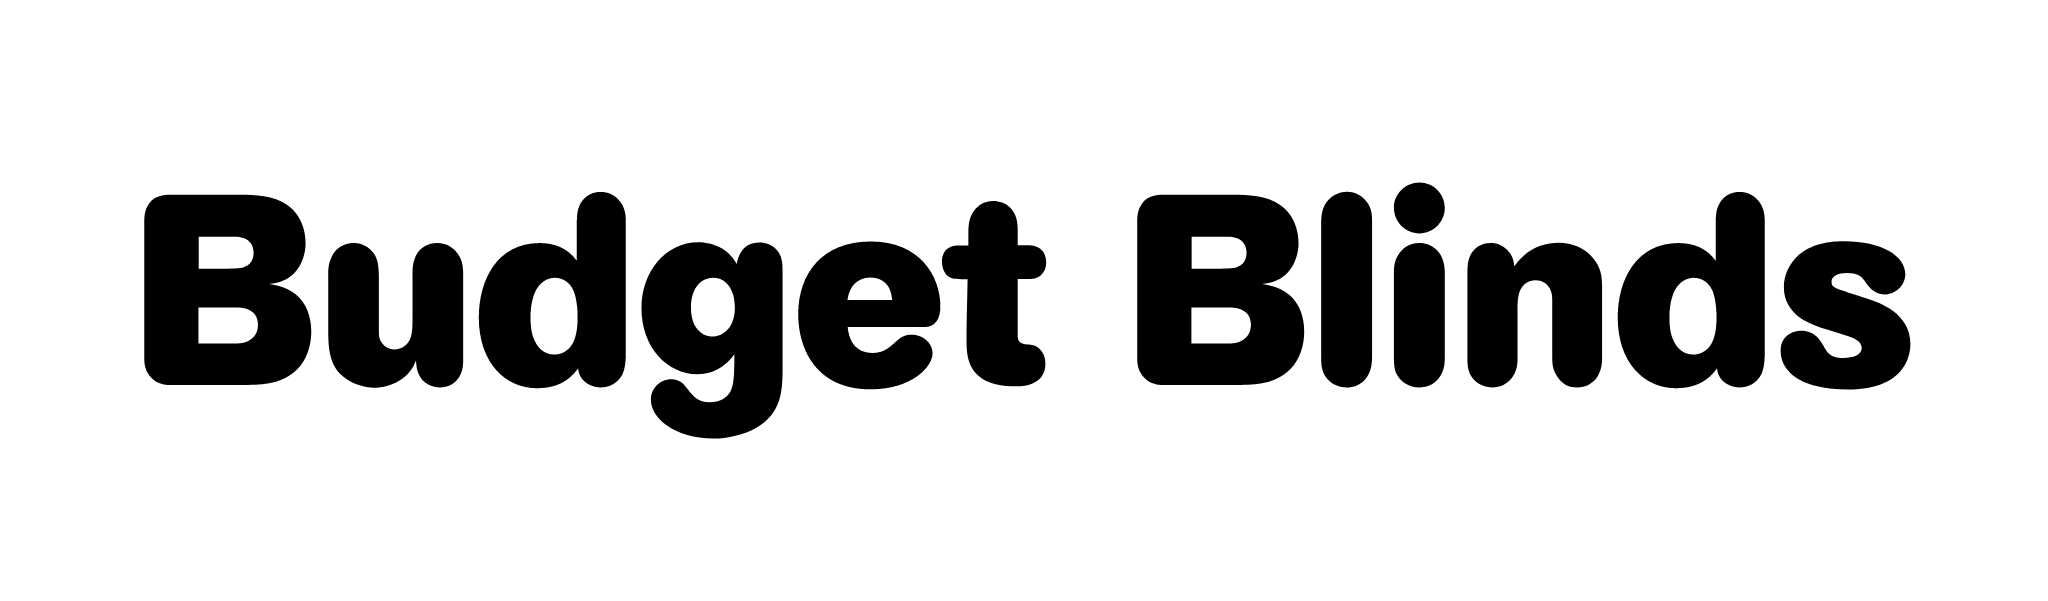 Budget Blinds (Bronze)